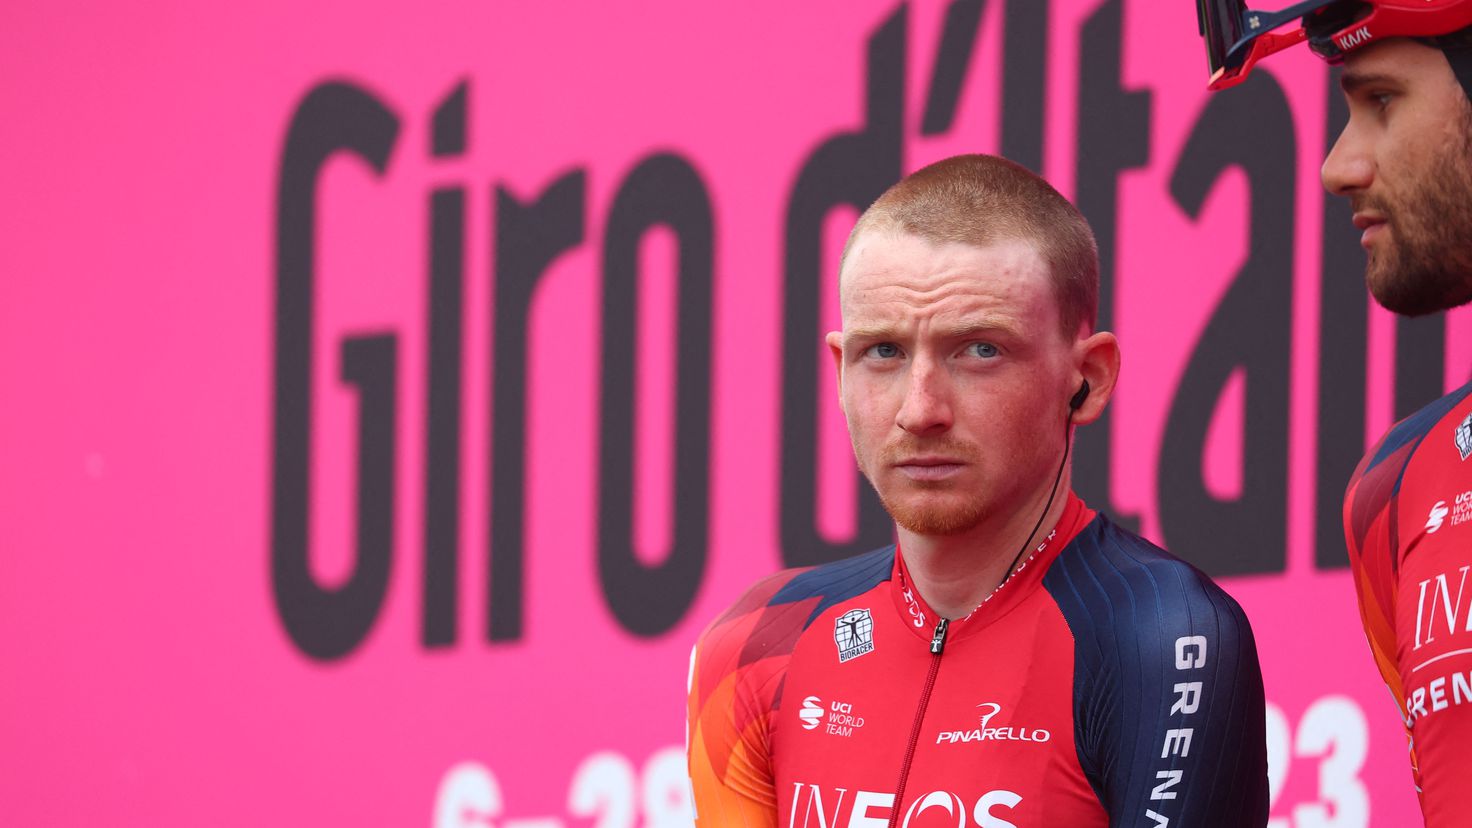 Tao Geoghegan Hart breaks his hip in his fall at the Giro
